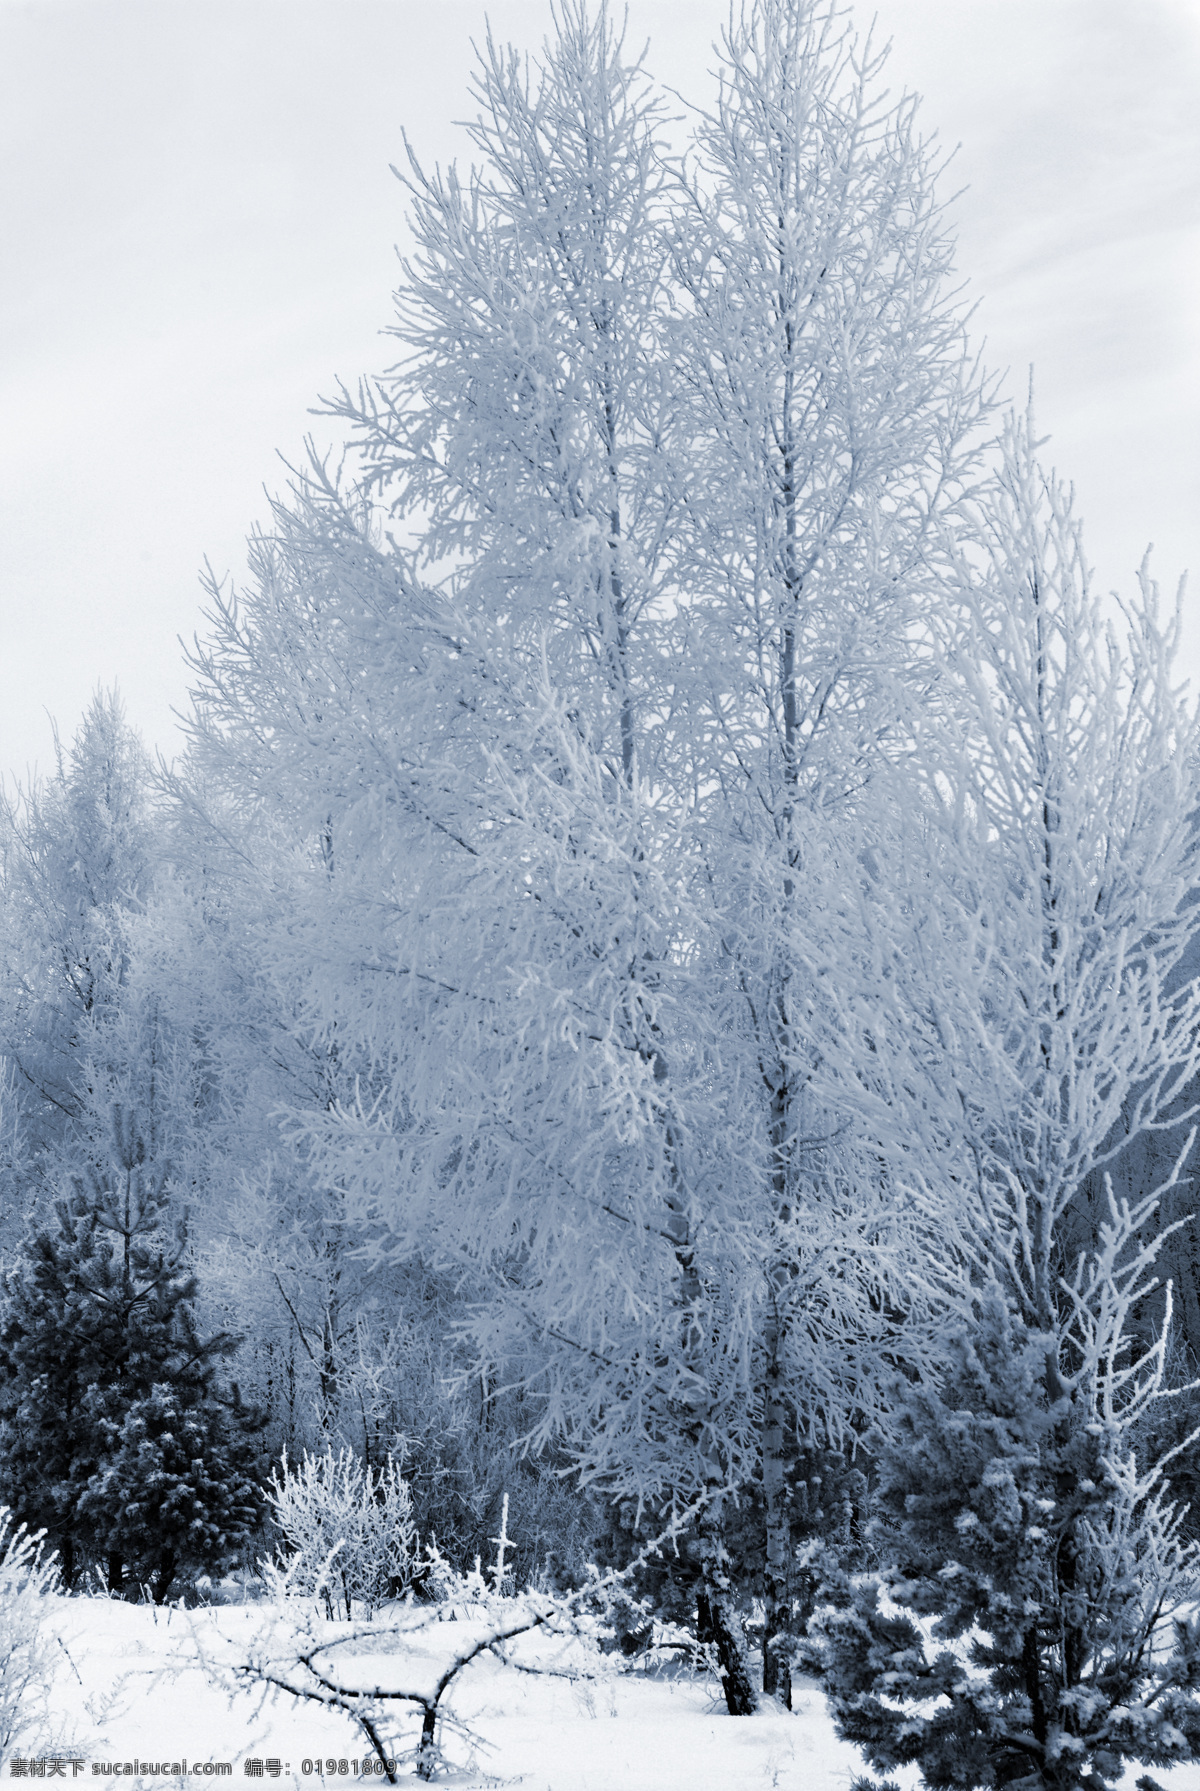 冬季 树木 冬天 雪景 美丽风景 景色 美景 积雪 雪花 雪地 森林 山水风景 风景图片